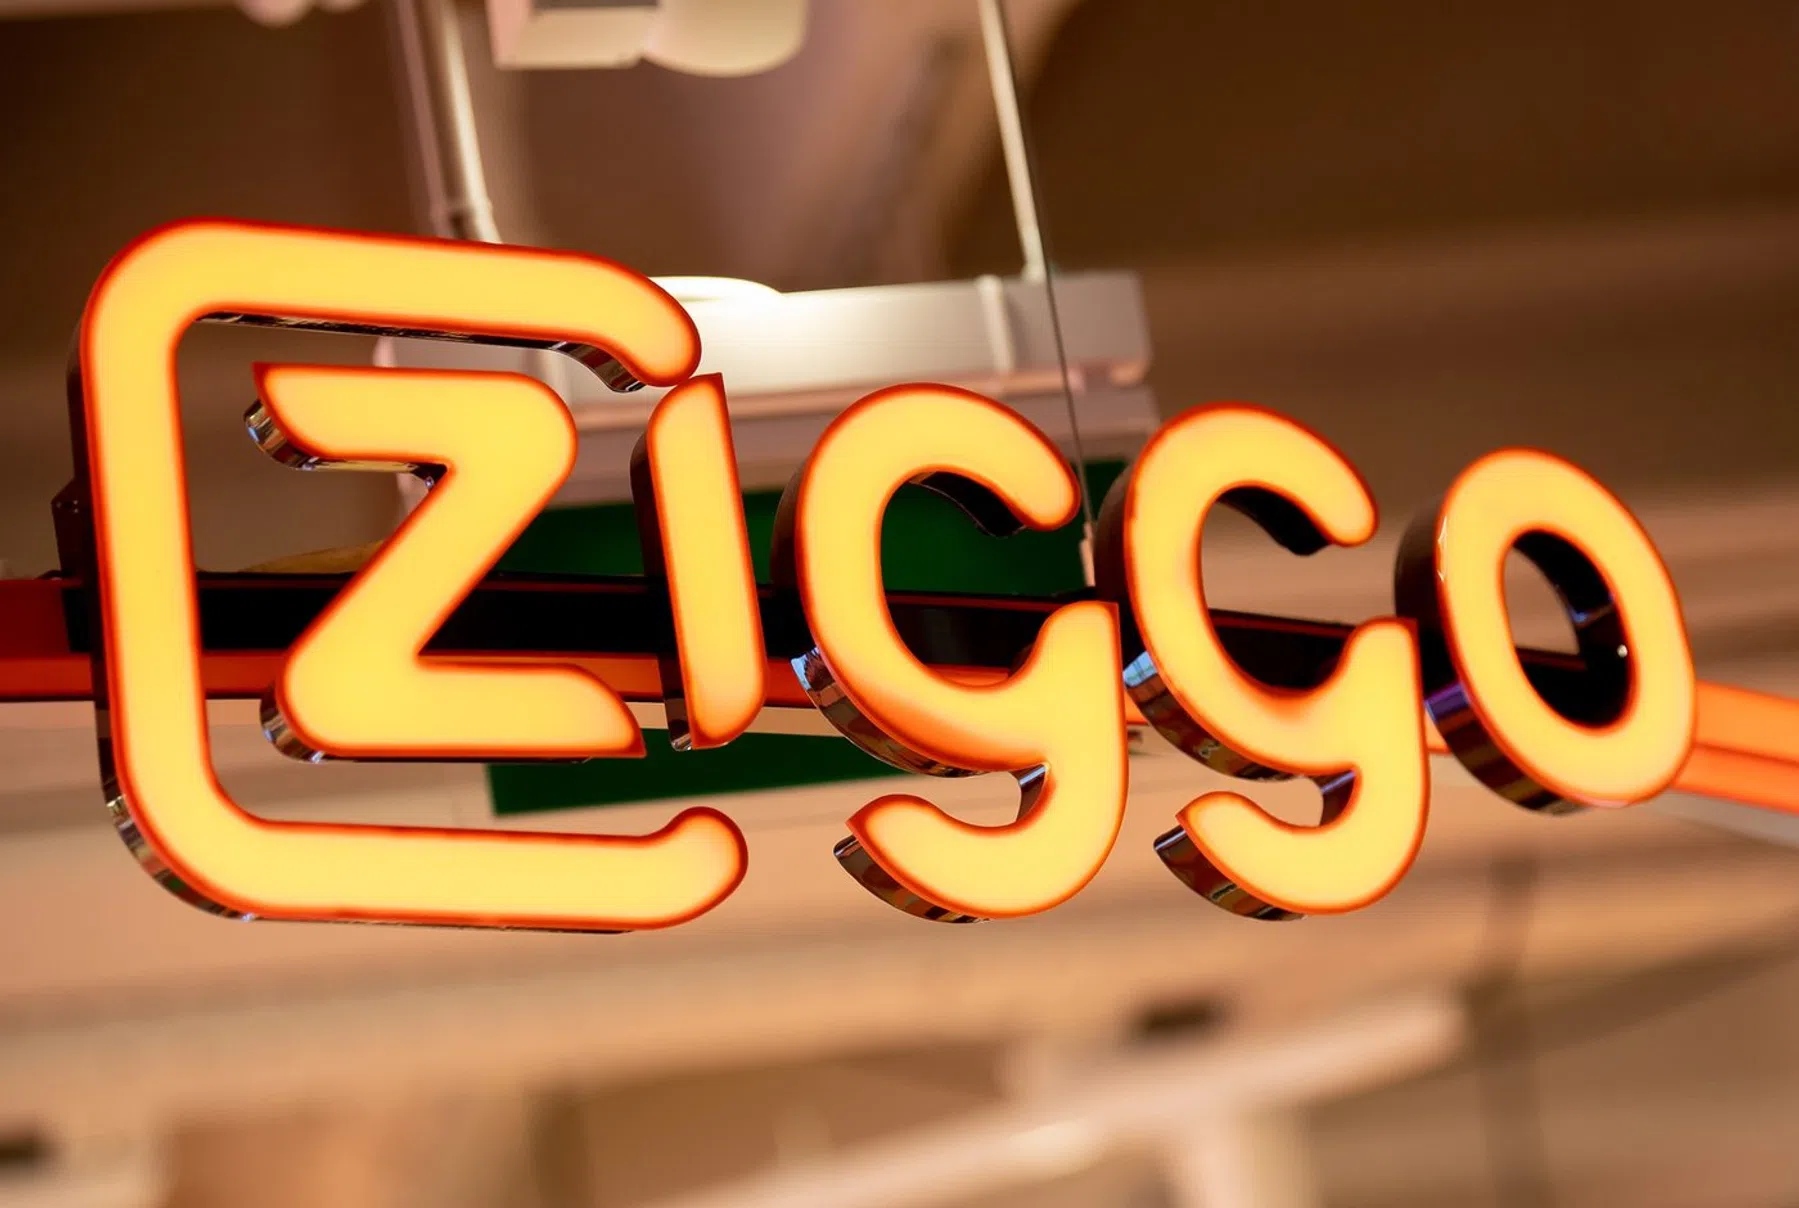 ziggo prijzen internet prijsverhoging giga elite abonnement prijs